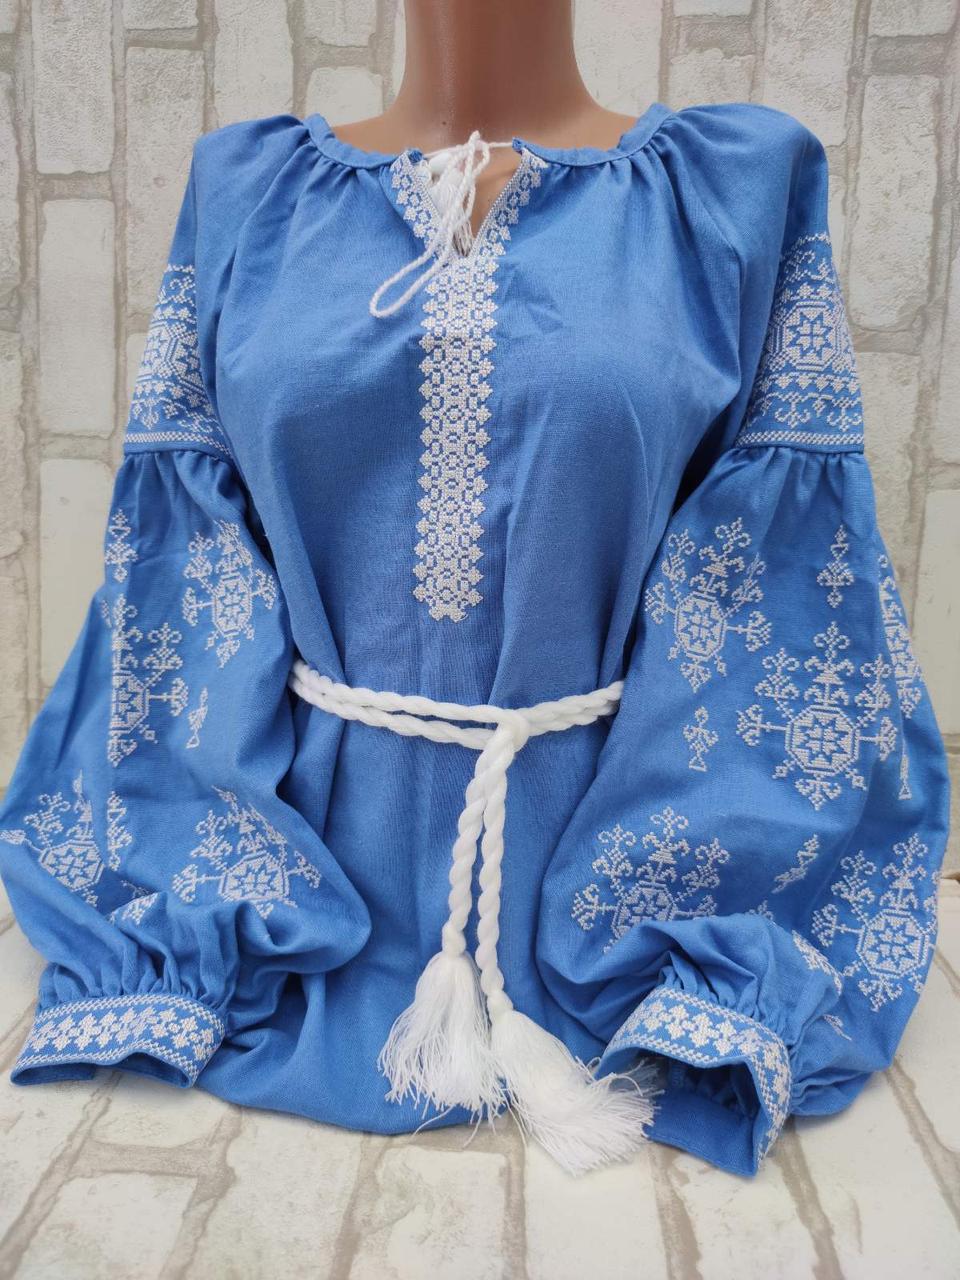 Жіноча блузка з вишивкою "Власта", натуральний льон, 48-52 р-ри